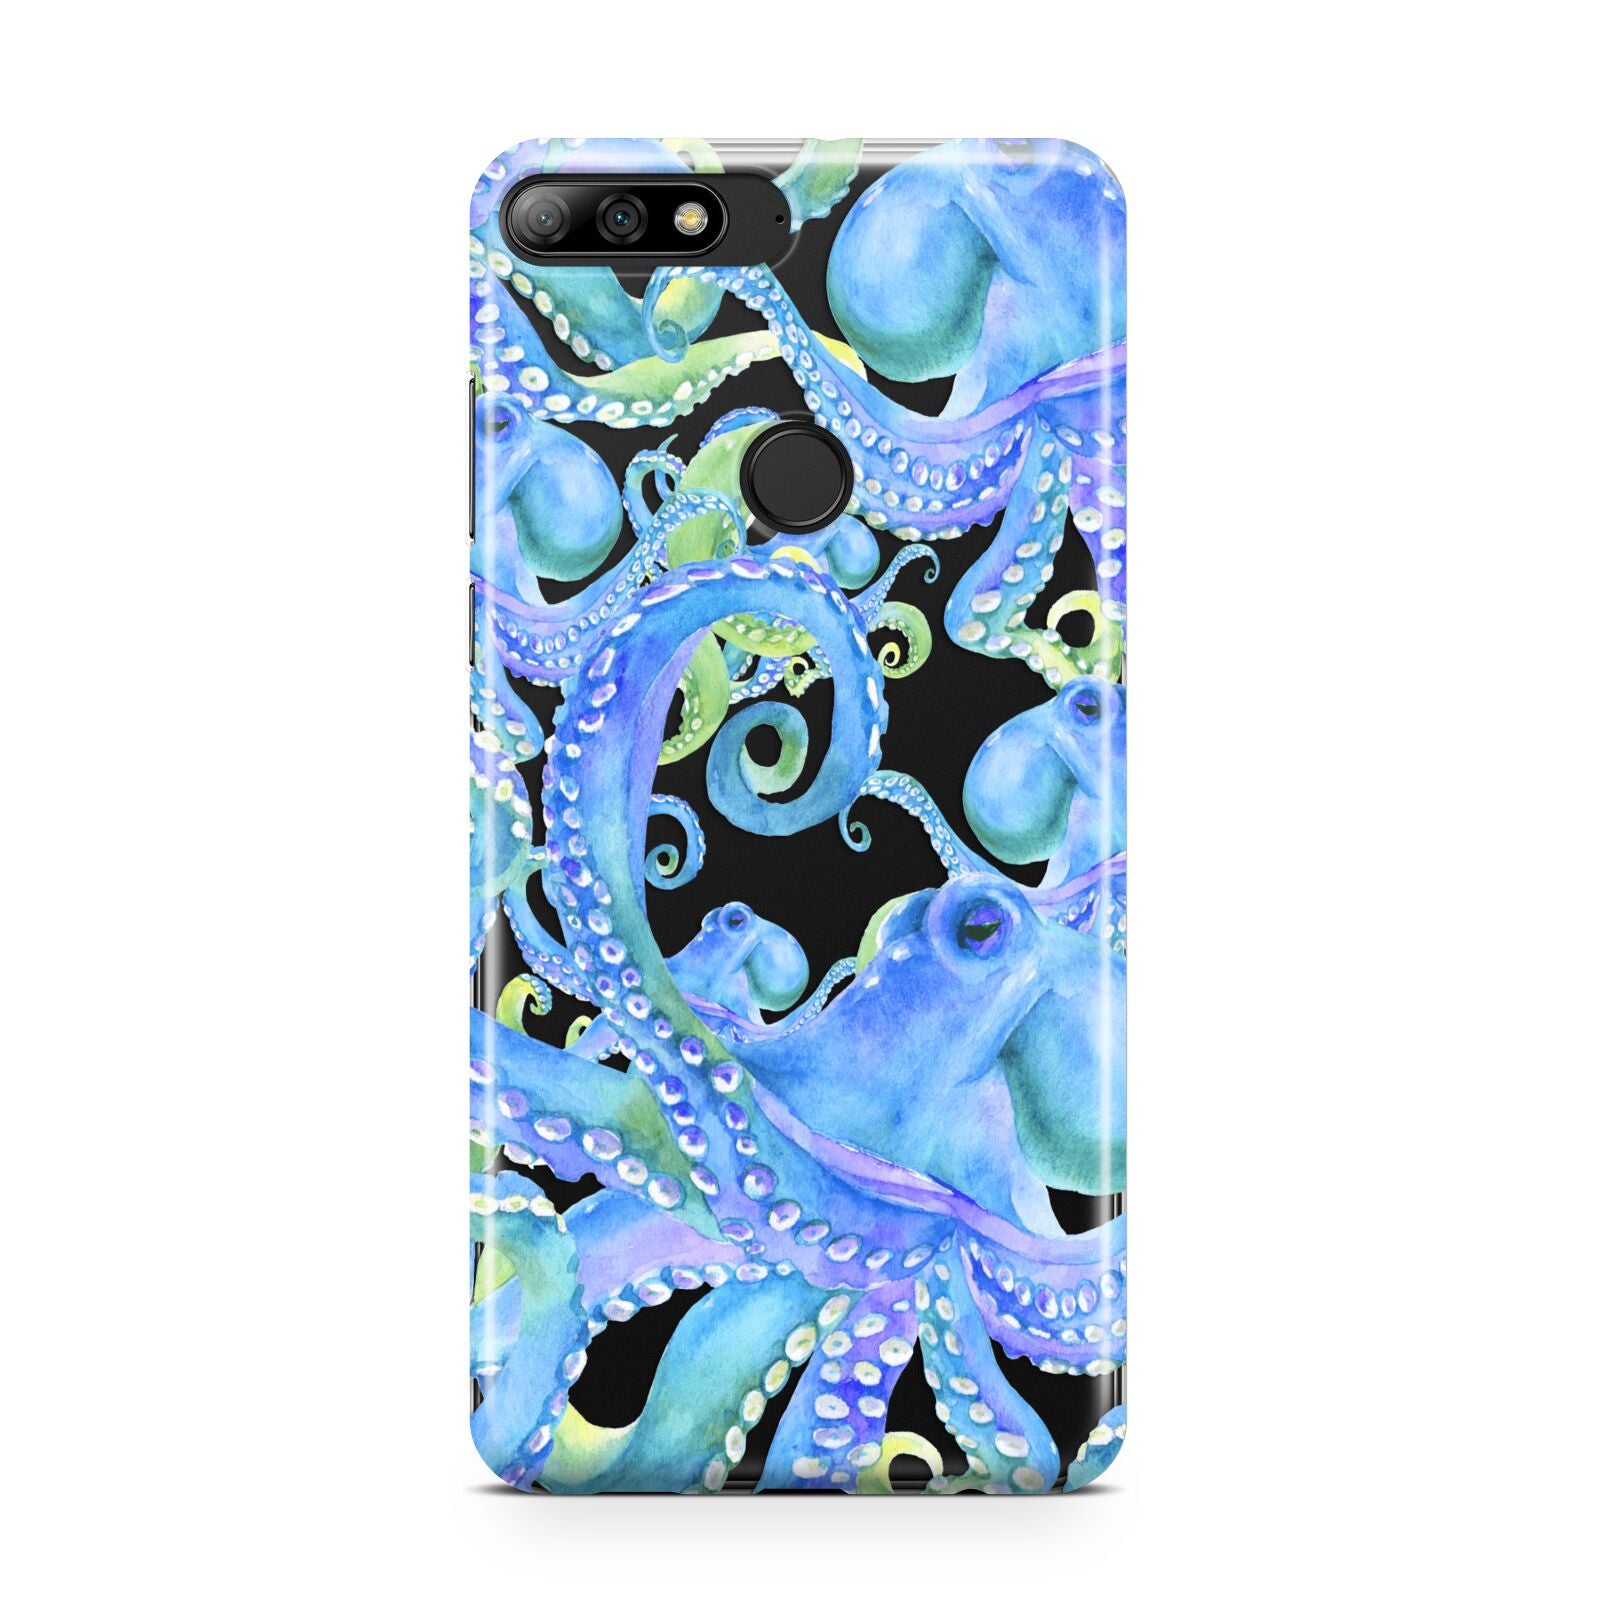 Octopus Huawei Y7 2018